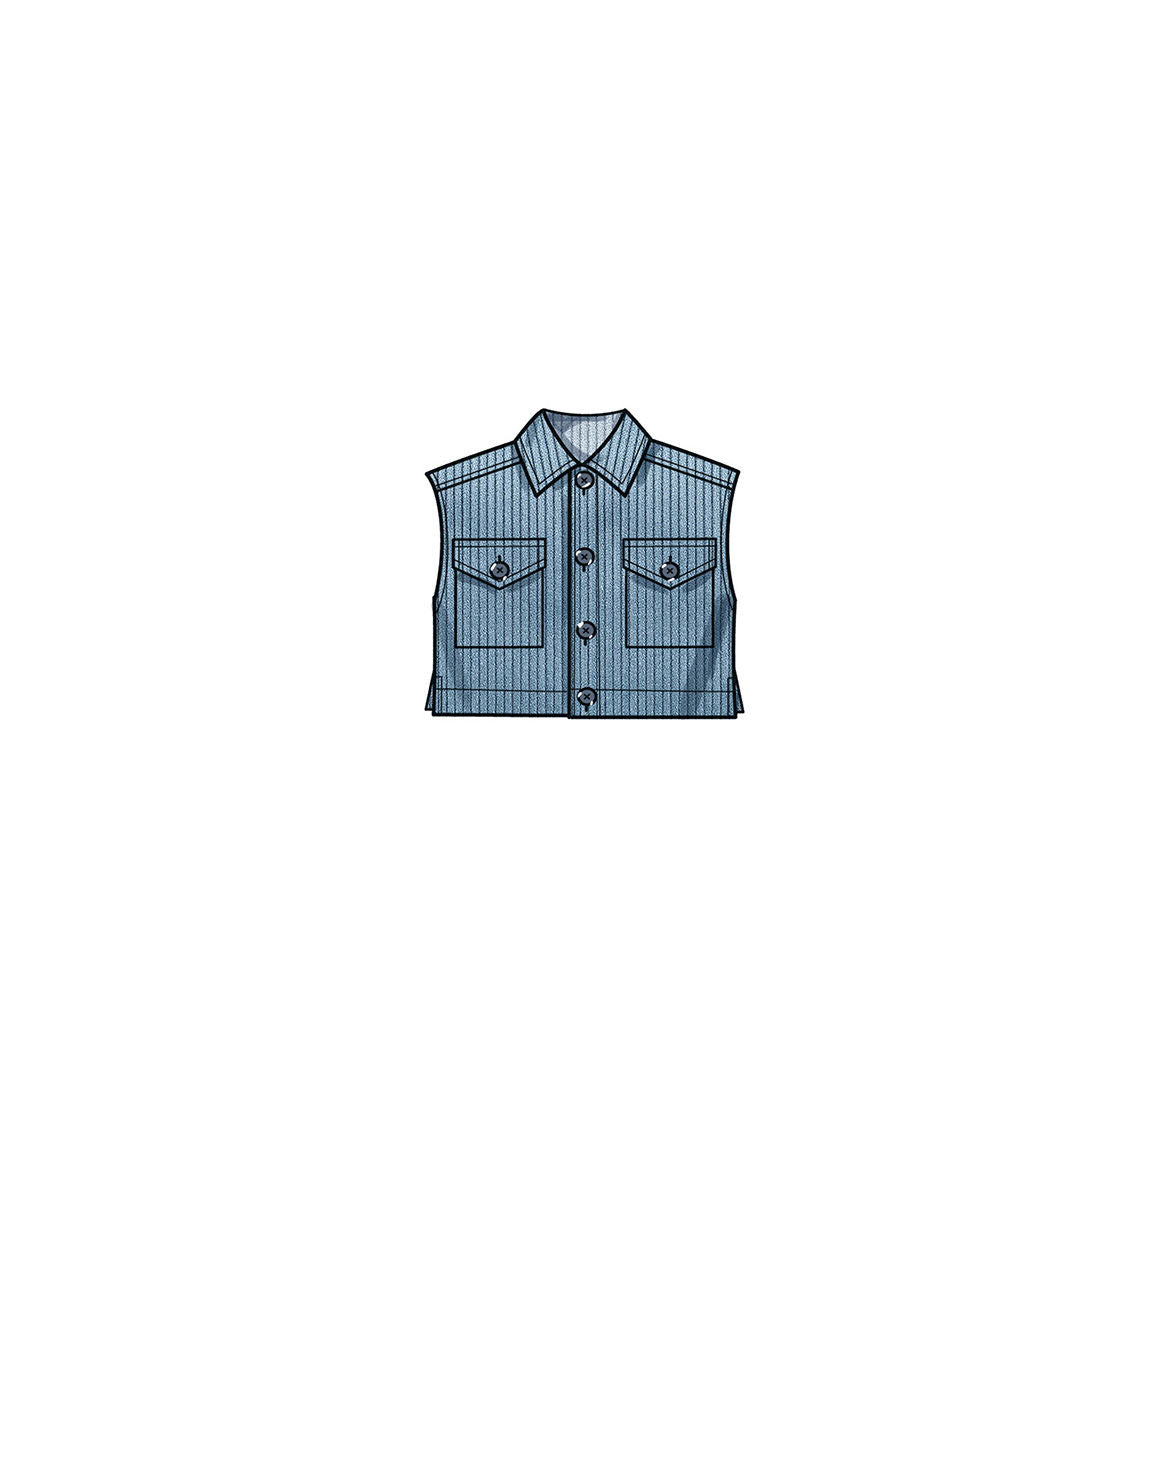 Symønster New Look N6746 - Bukser Veste Skjorte Trøje - Pige Dreng | Billede 4